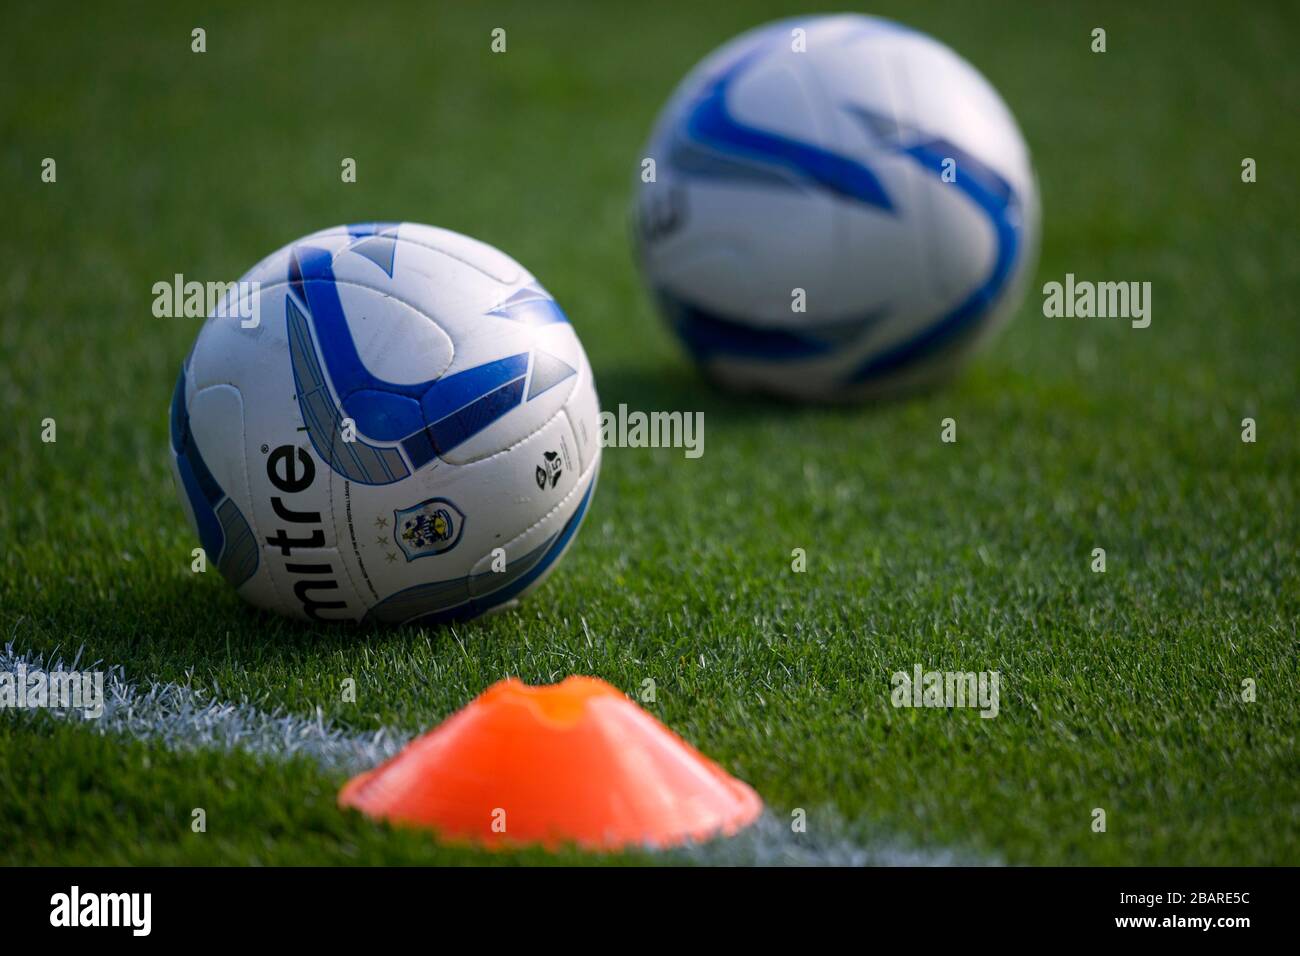 Official Huddersfield Town football league mitre matchballs Stock Photo